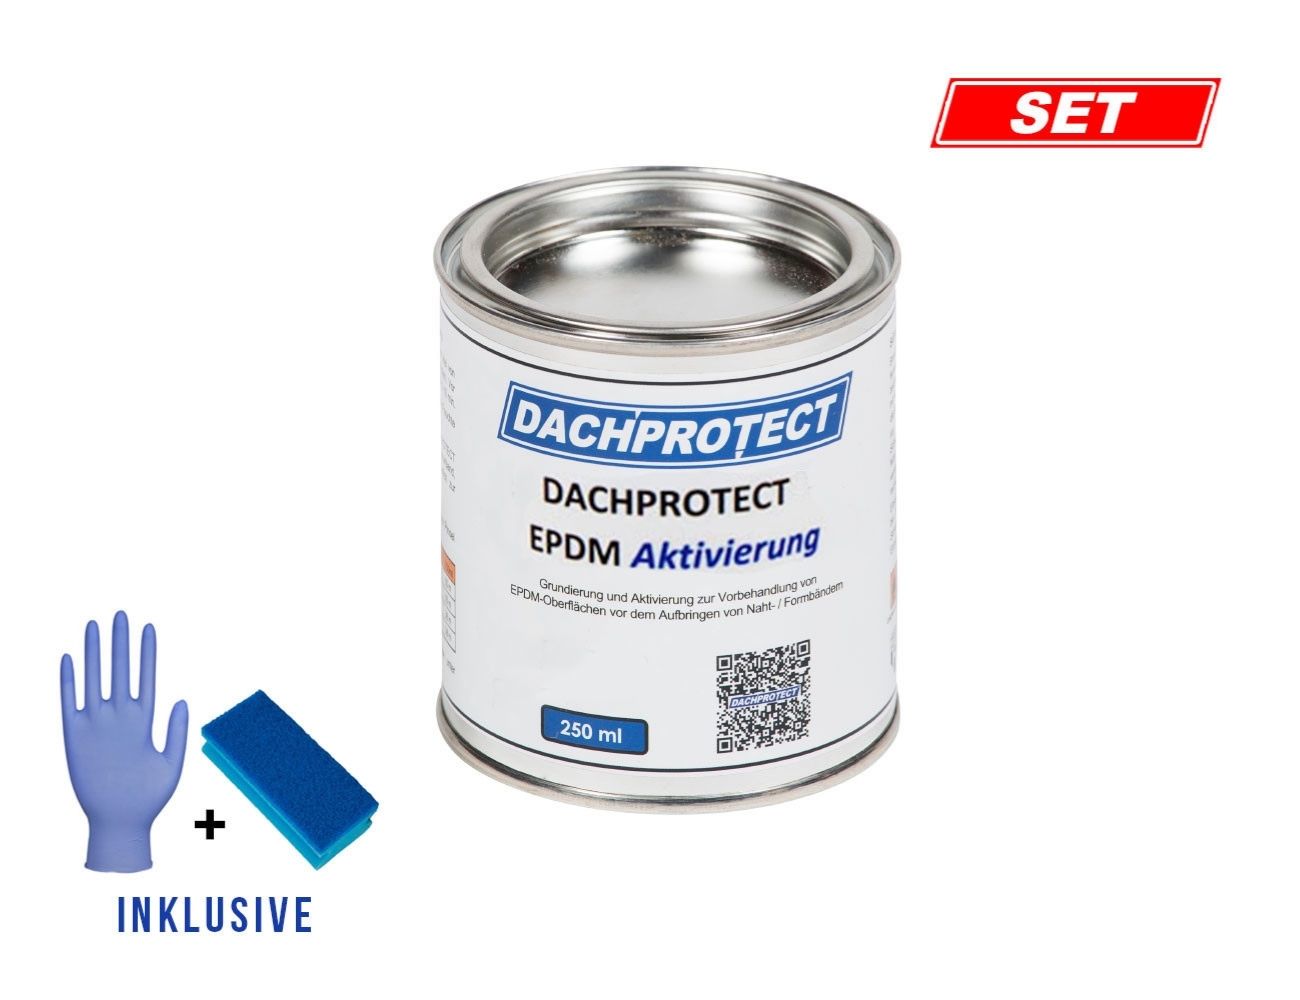 DACHPROTECT EPDM Aktivierung 250 ml + Schwamm & Handschuh für Nahtprodukte (bis 18 m Naht)